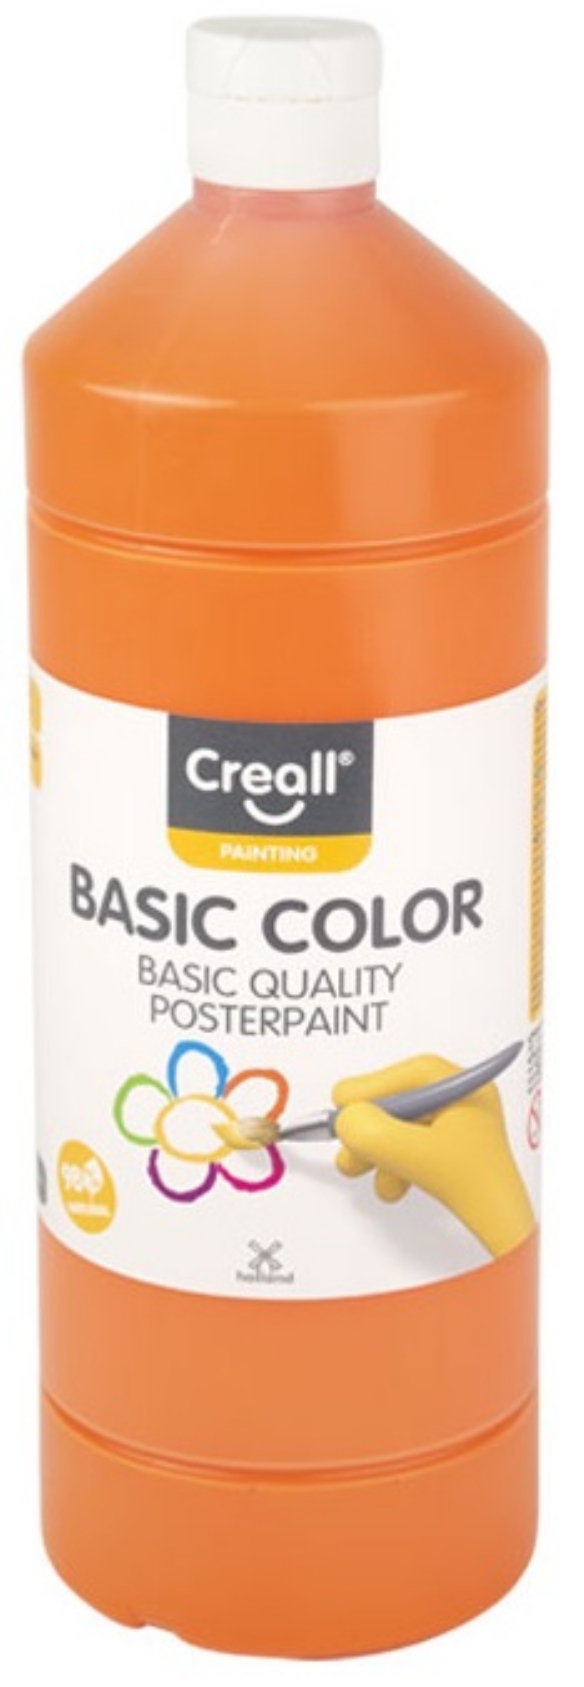 Basic-color plakkaatverf, 1000 ml, 04 oranje